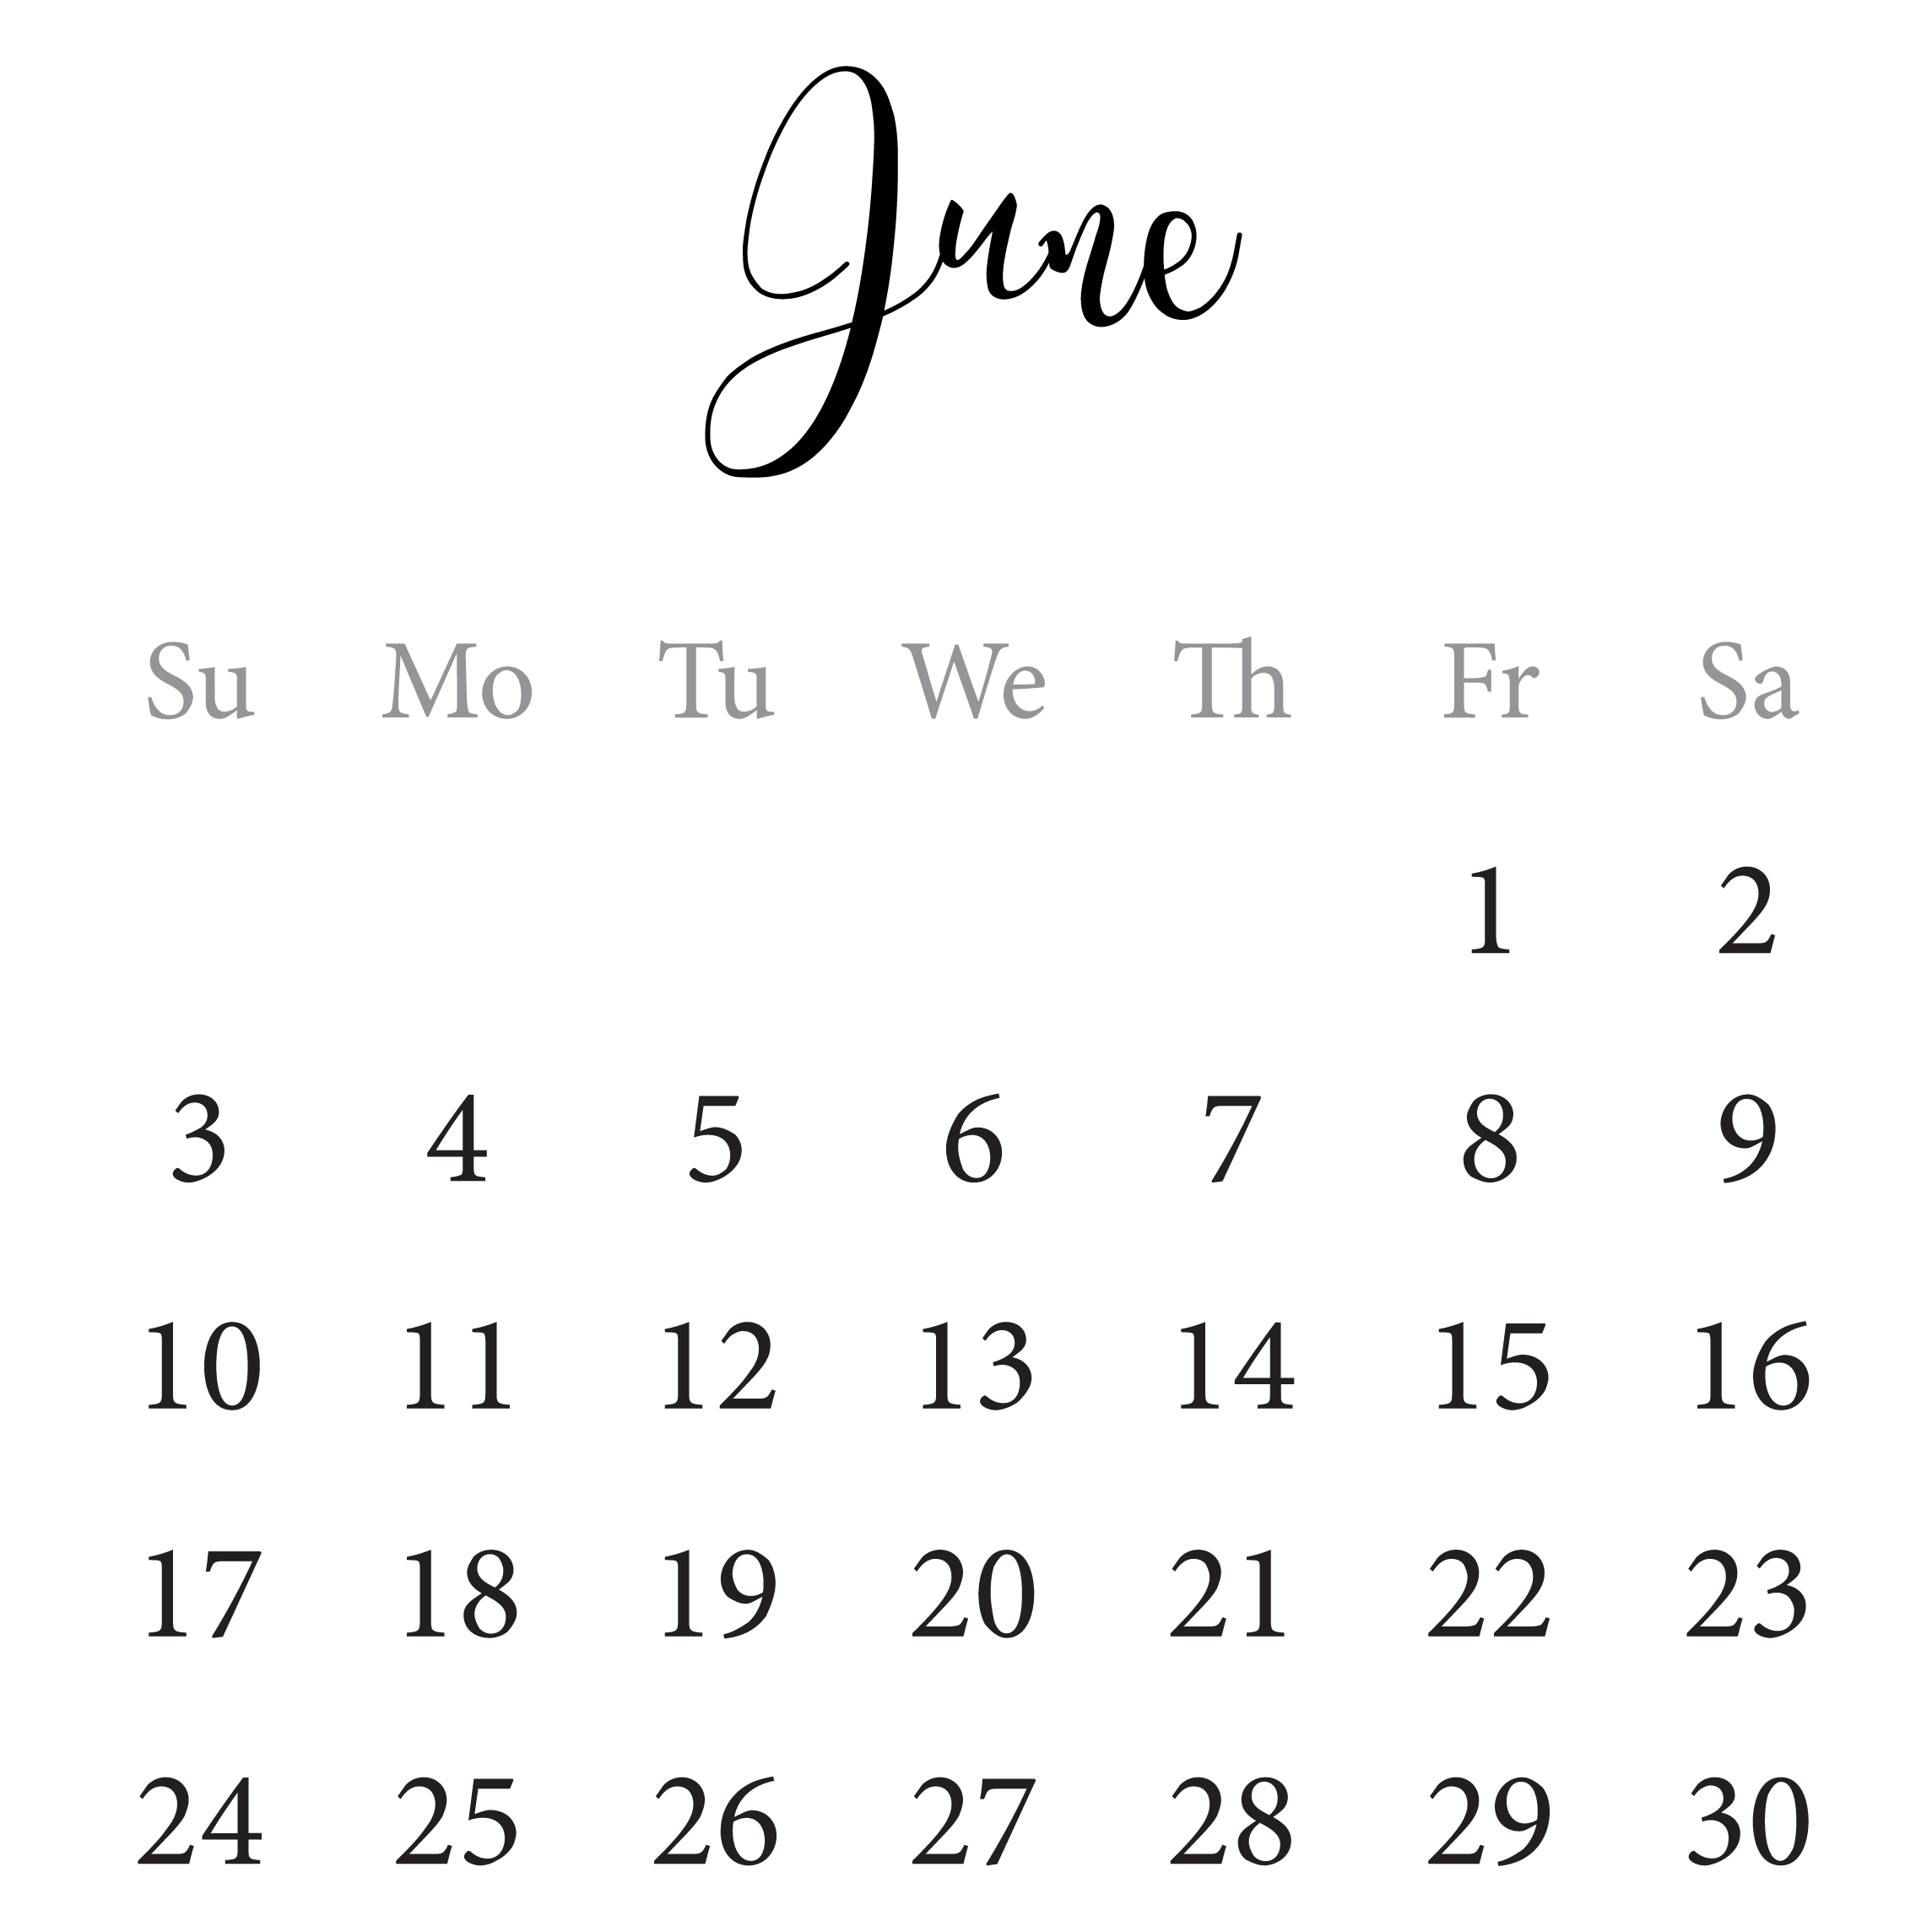 2018-freetoedit-calendar-june-sticker-by-krajungkrajing